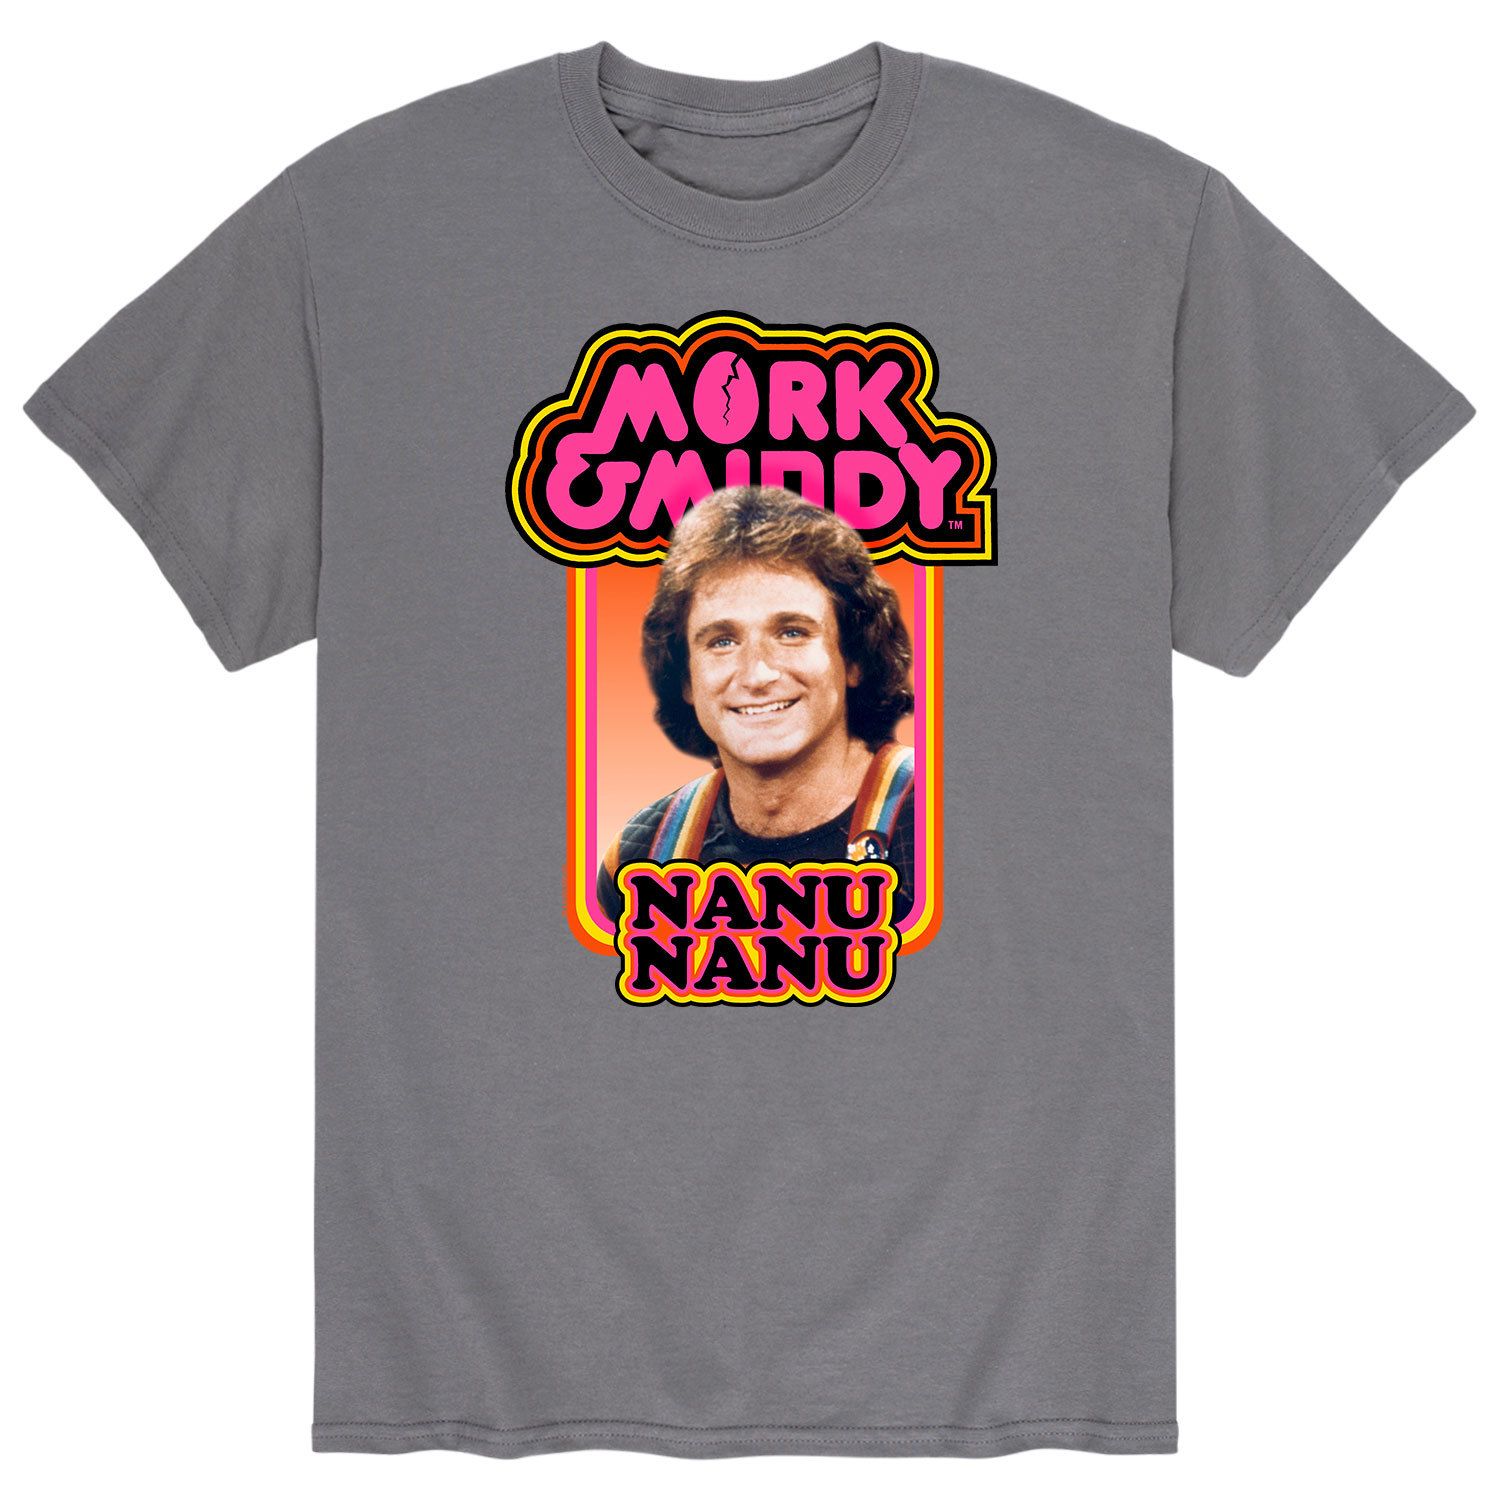 Мужская футболка Mork & Mindy Nanu Nanu Licensed Character nanu resort arambol